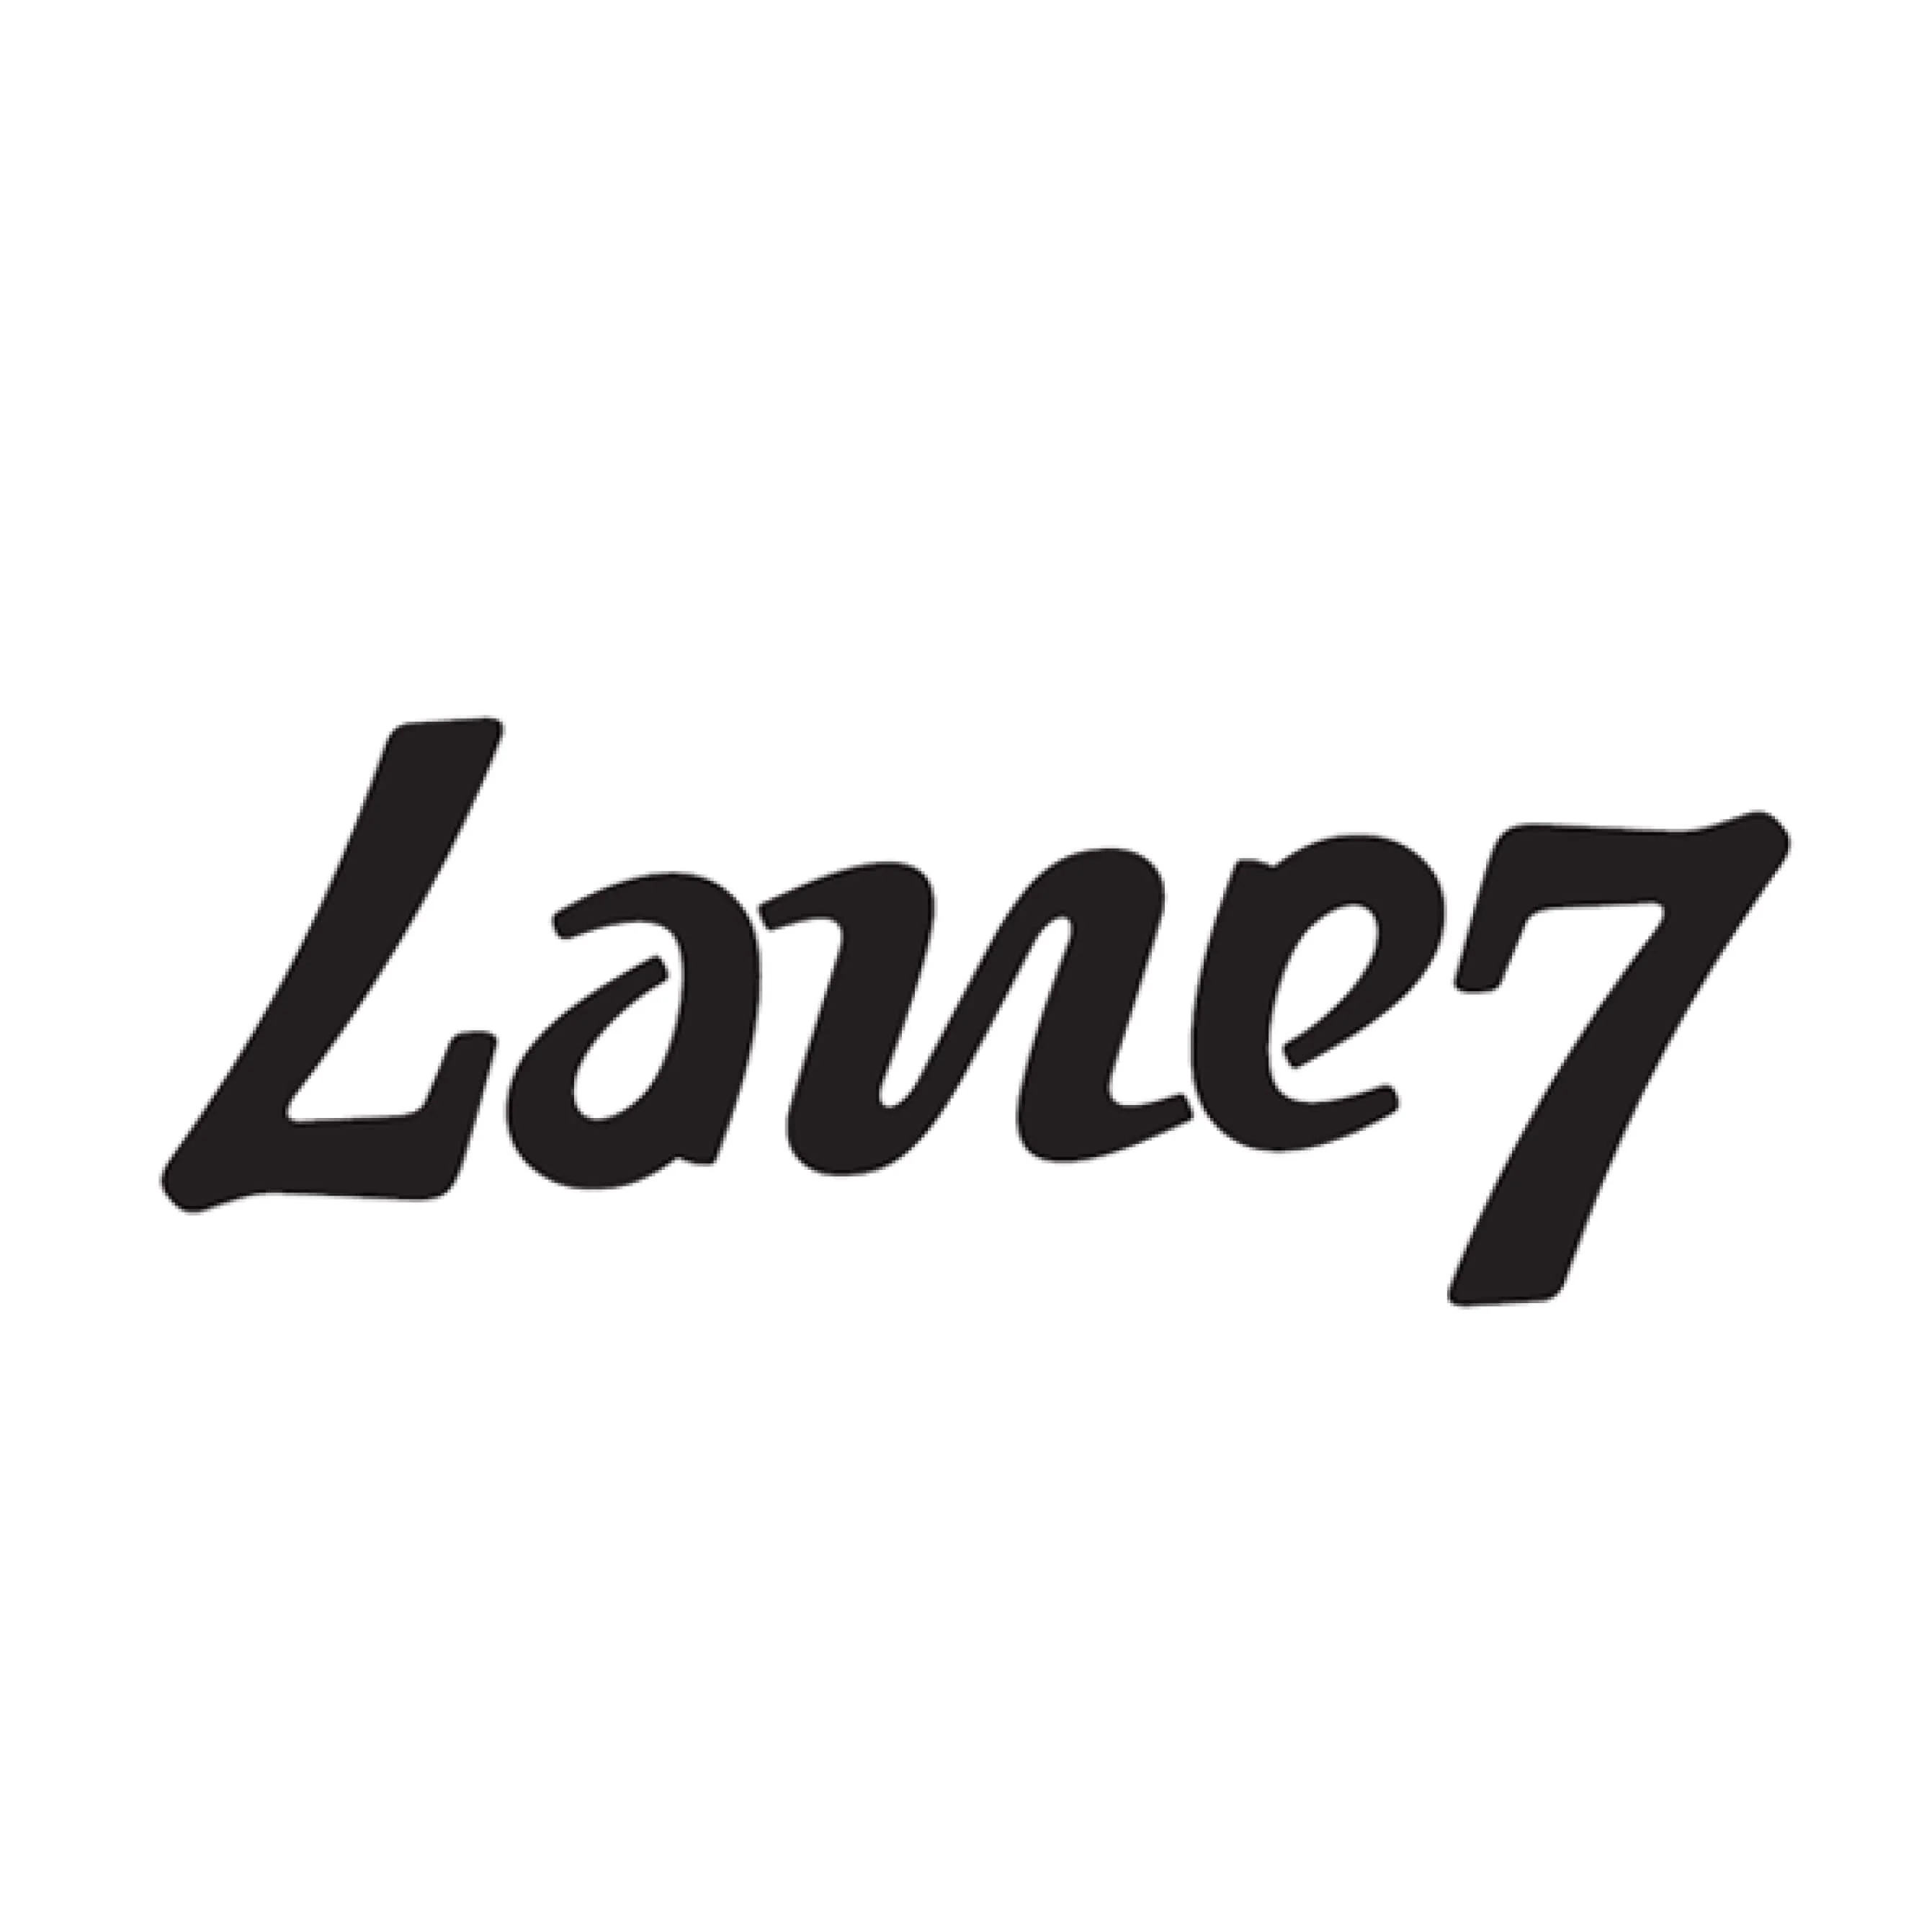 Lane_7_logo.webp